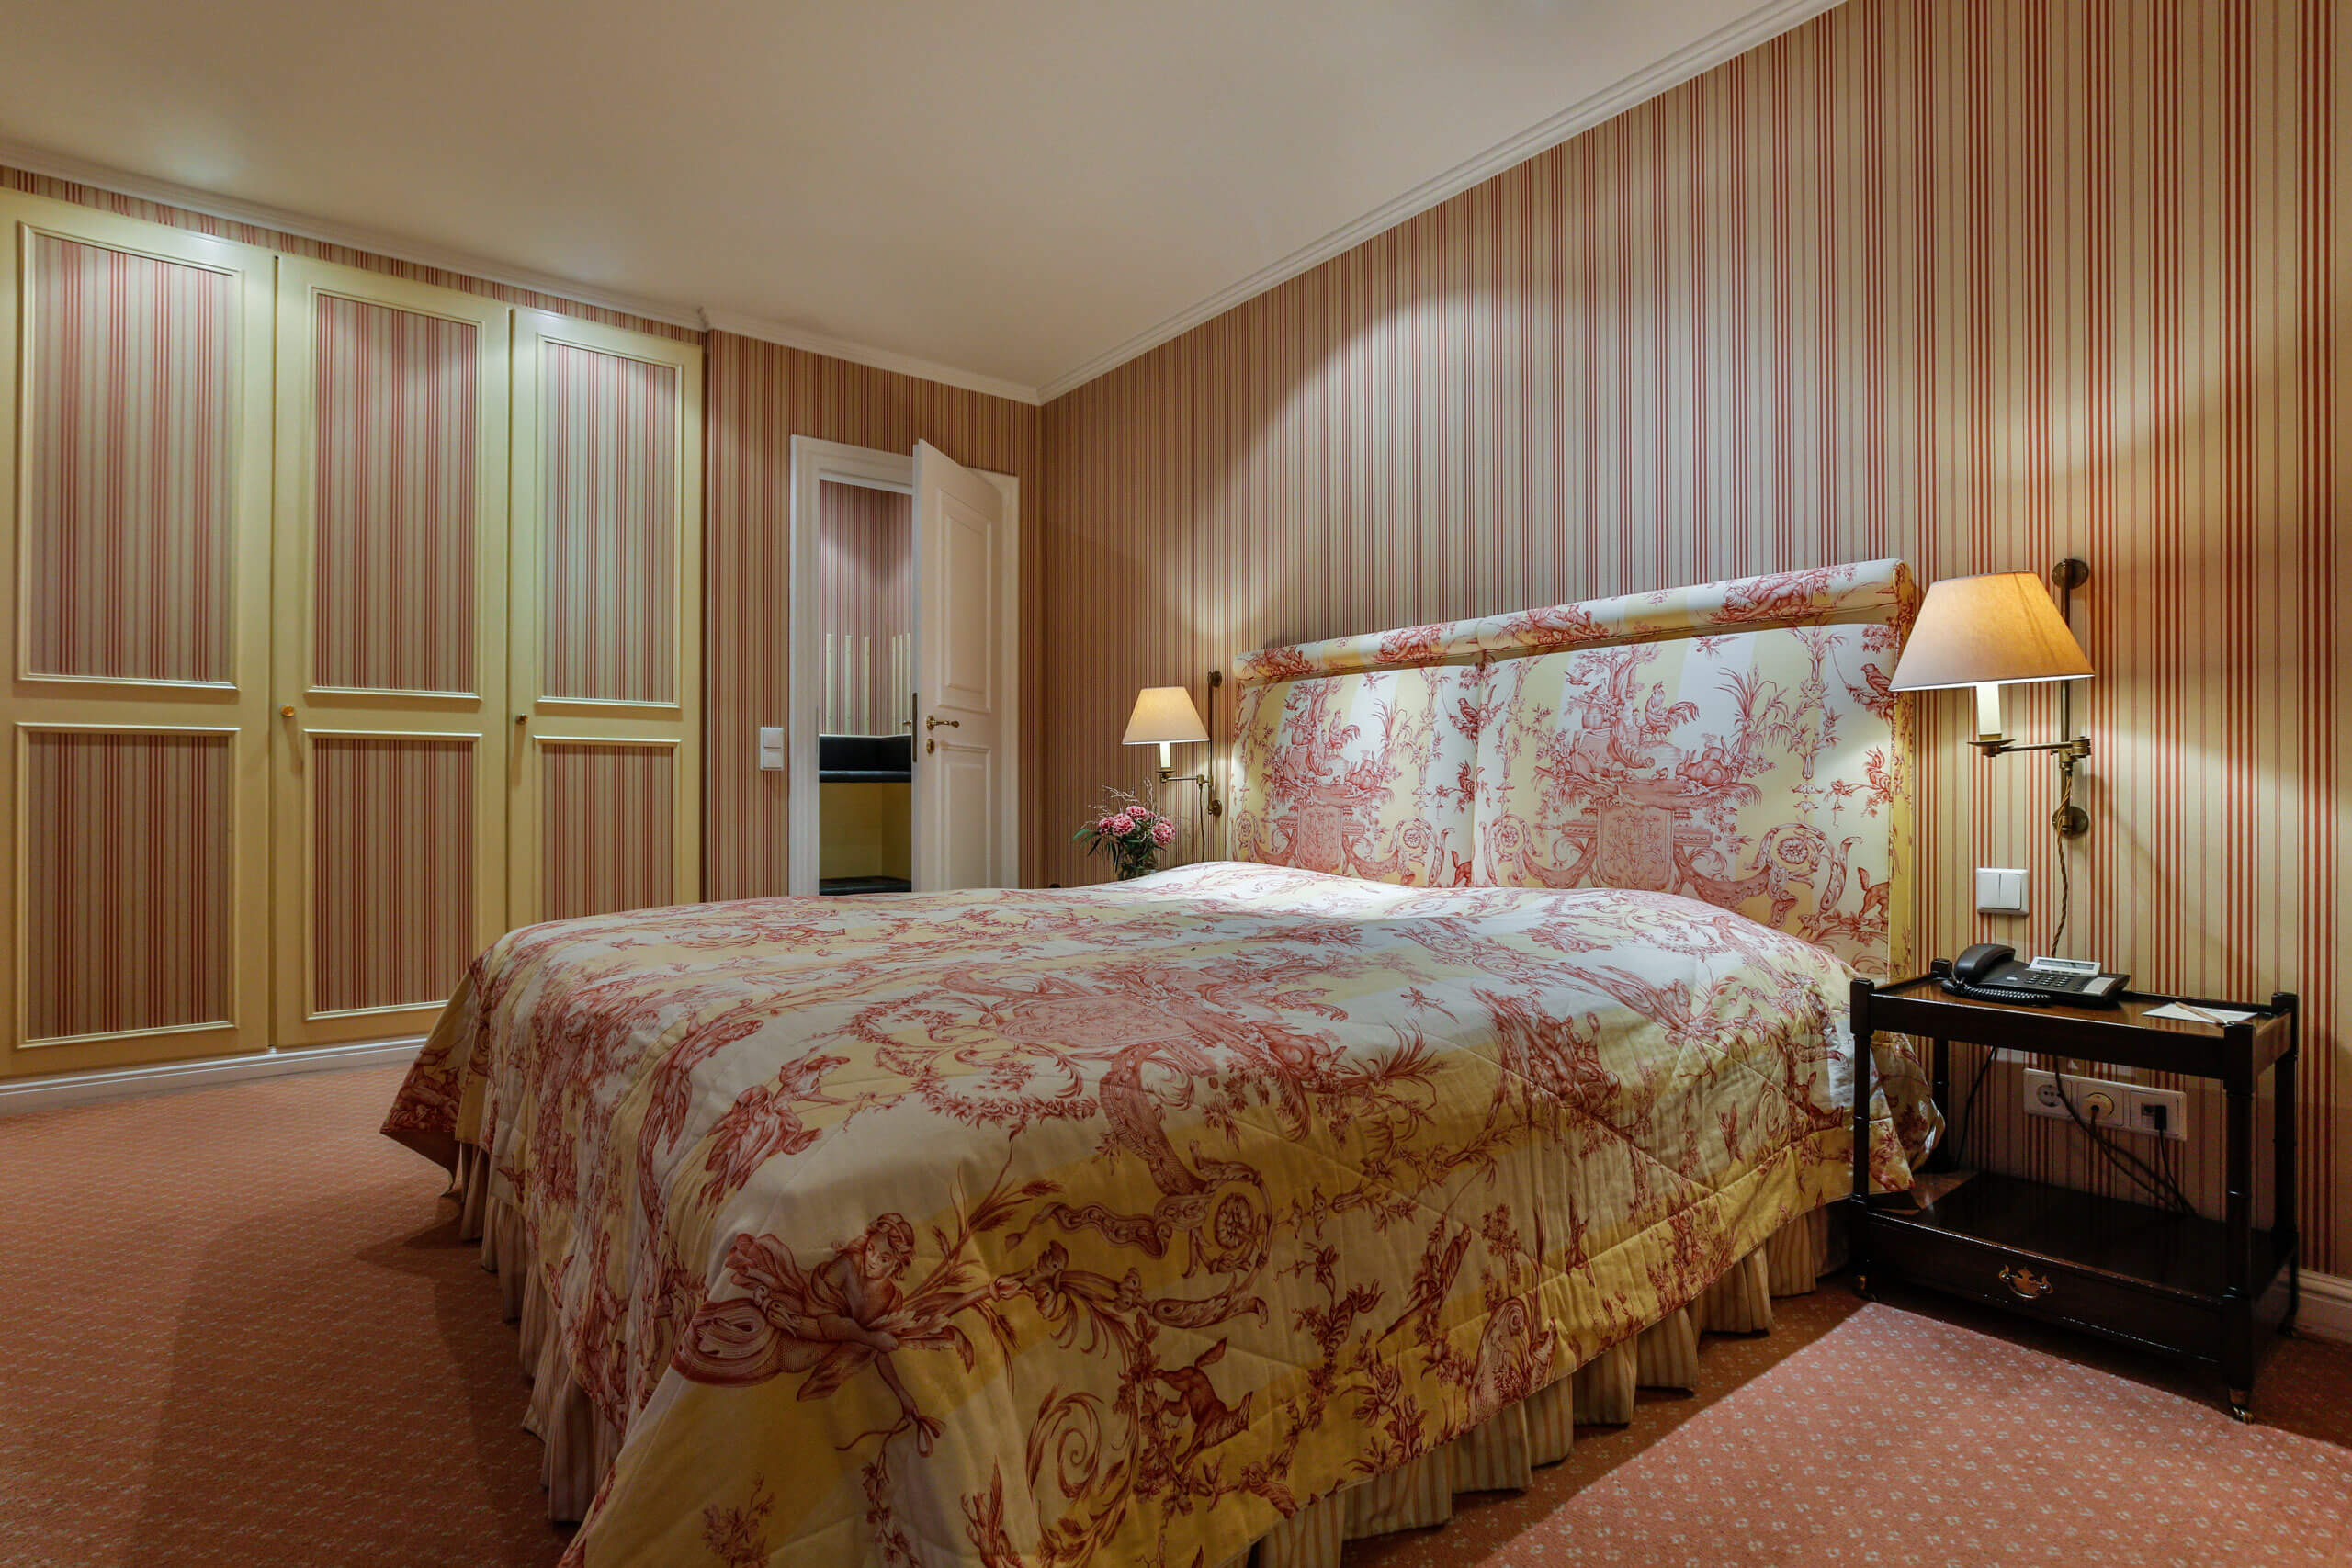 Ein Bett mit floralem Muster in einem Raum